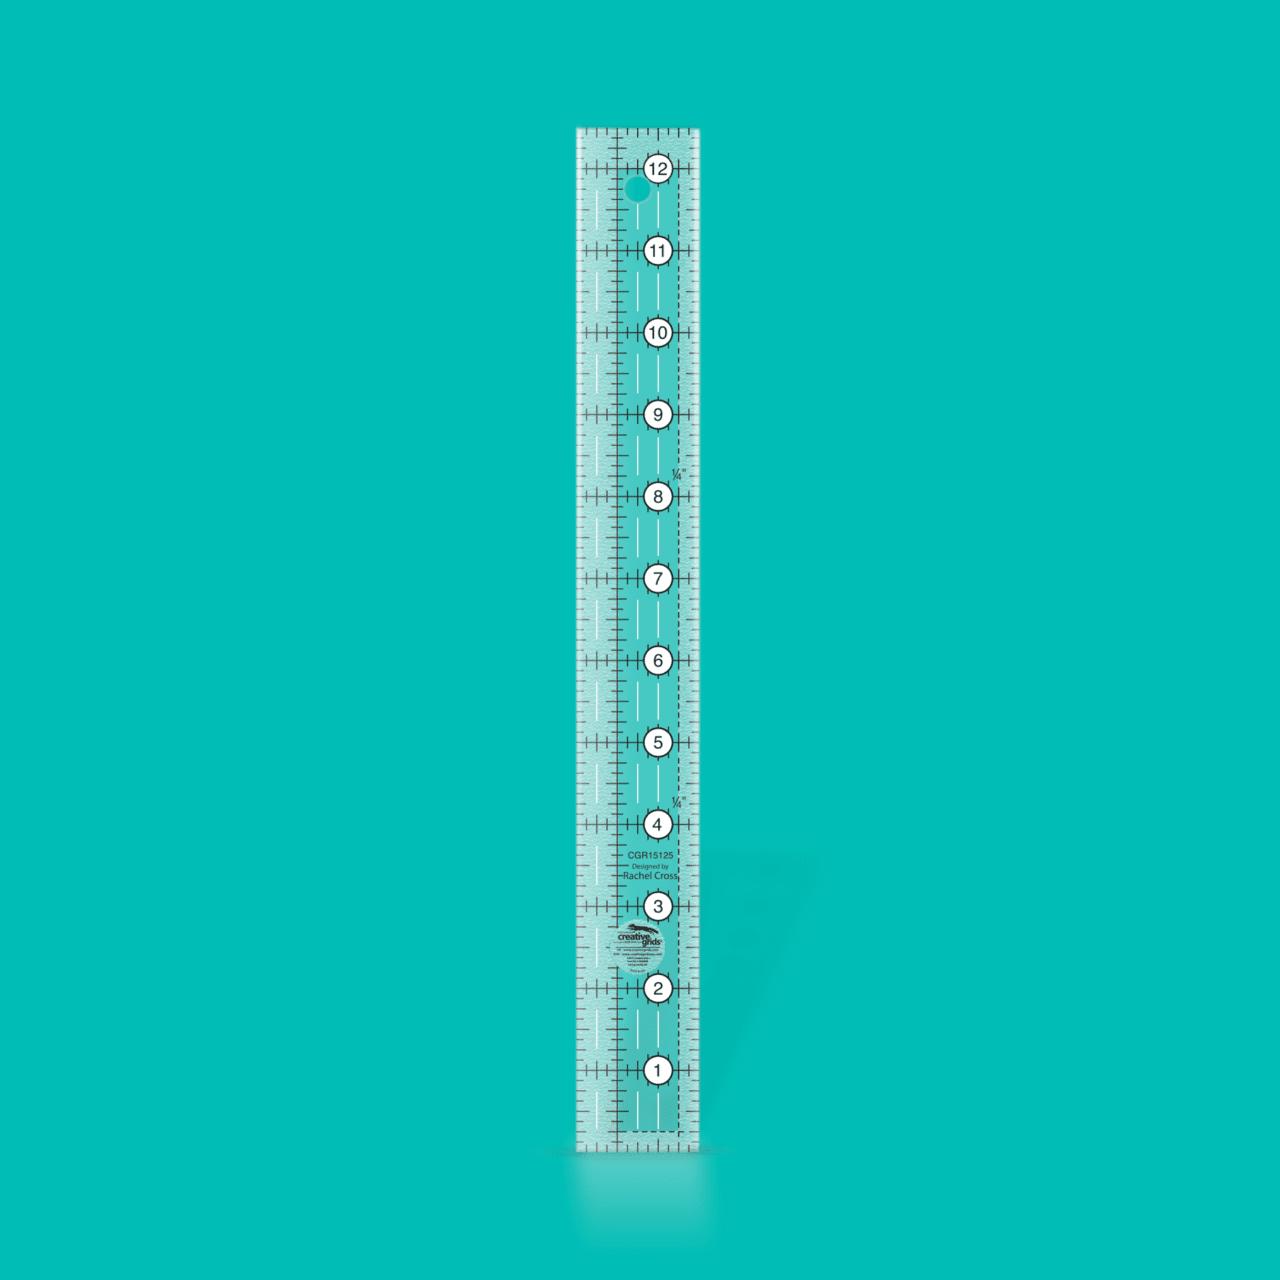 Add-a-quarter ruler 12 inch